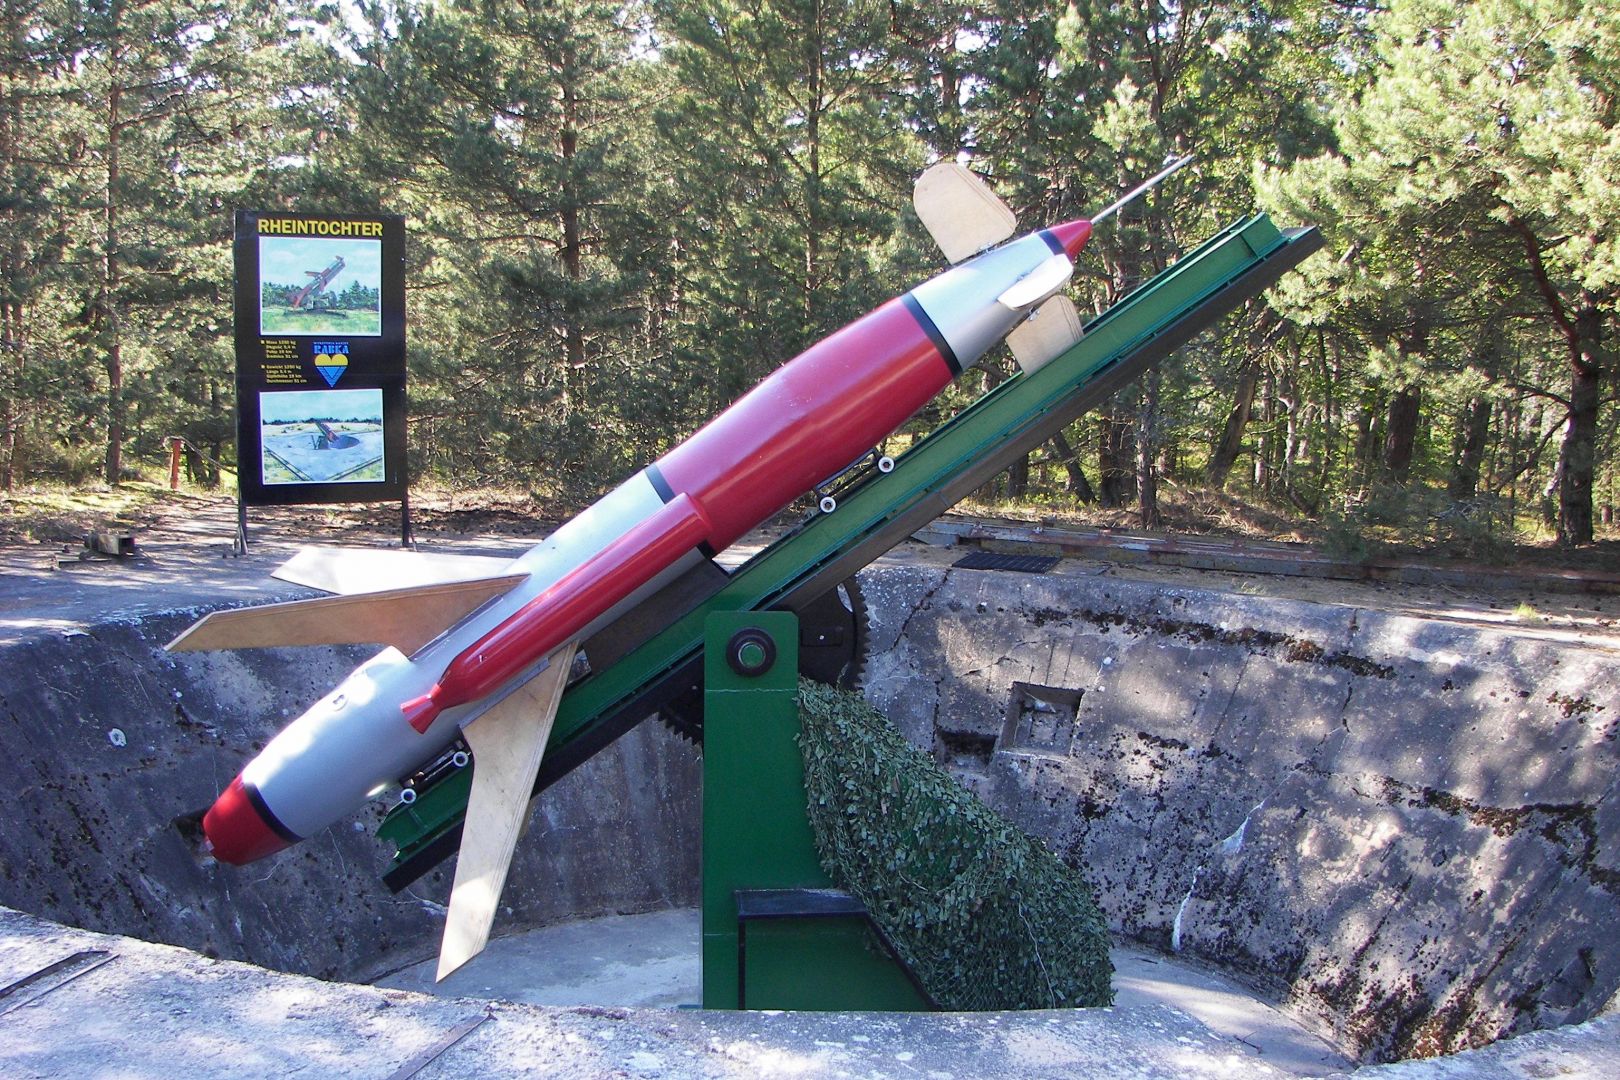 Rocket Launcher Museum